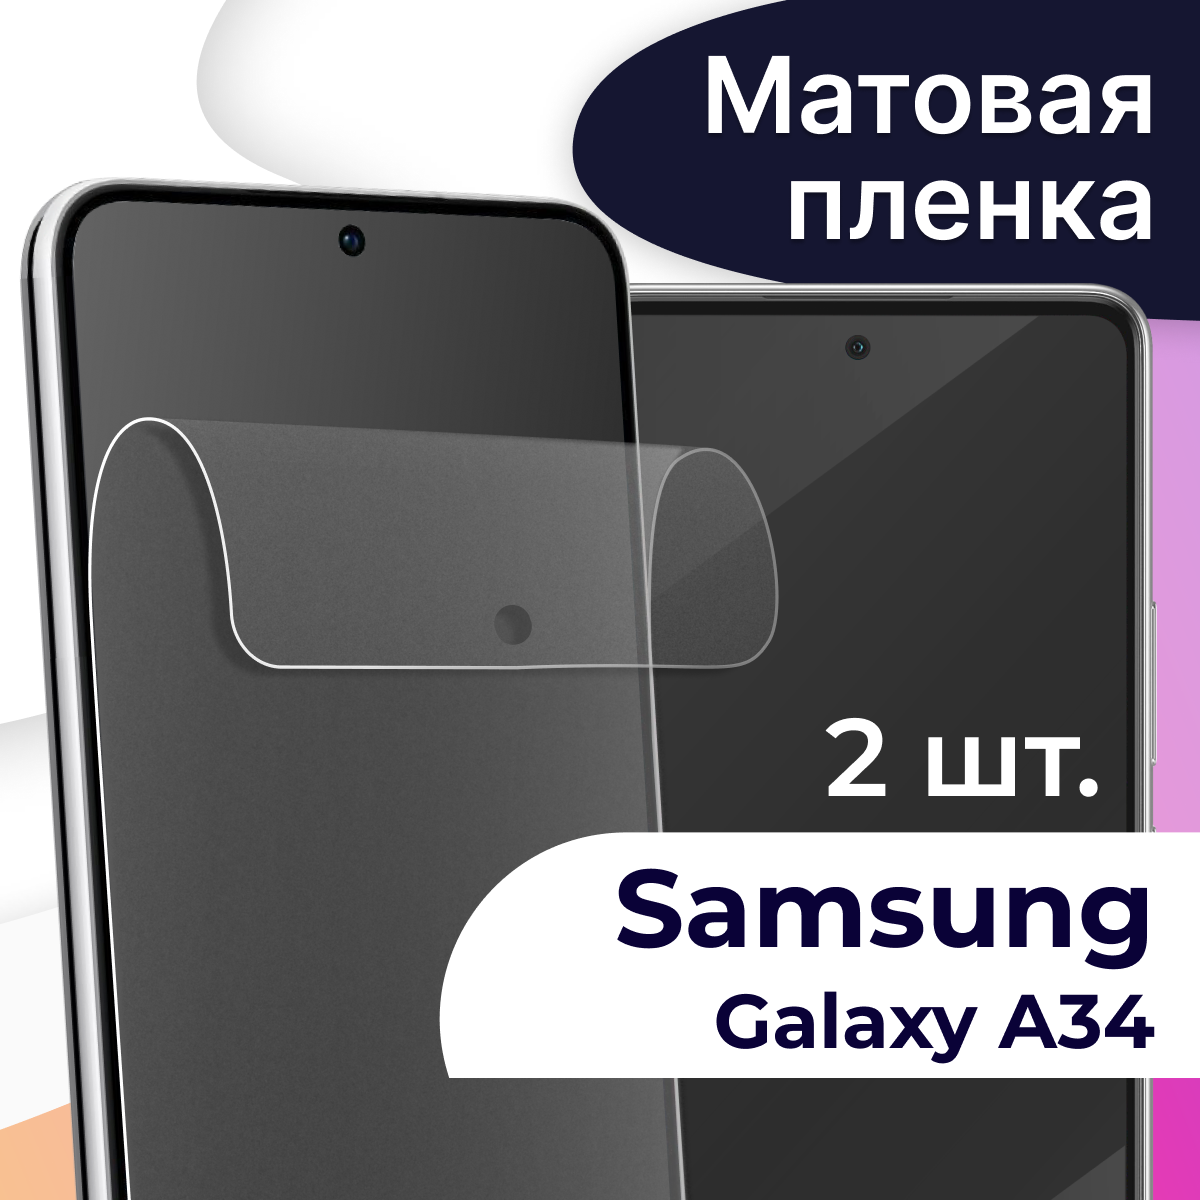 Комплект 2 шт. Матовая пленка на телефон Samsung Galaxy A34 / Защитная пленка на телефон Самсунг Галакси А34 / Защитная самовосстанавливающаяся пленка